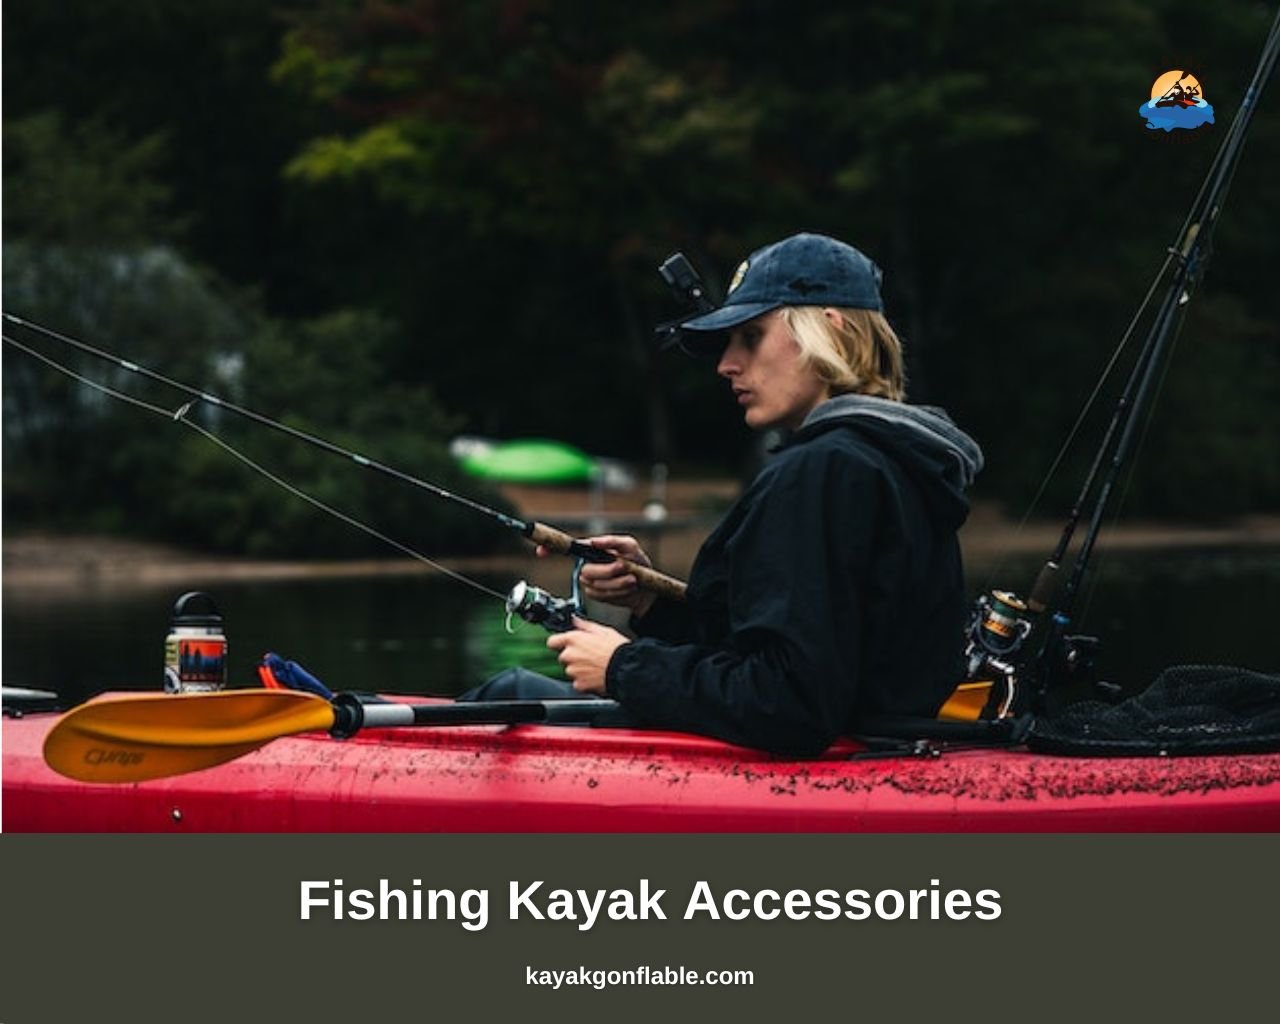 Accesorios para kayaks de pesca